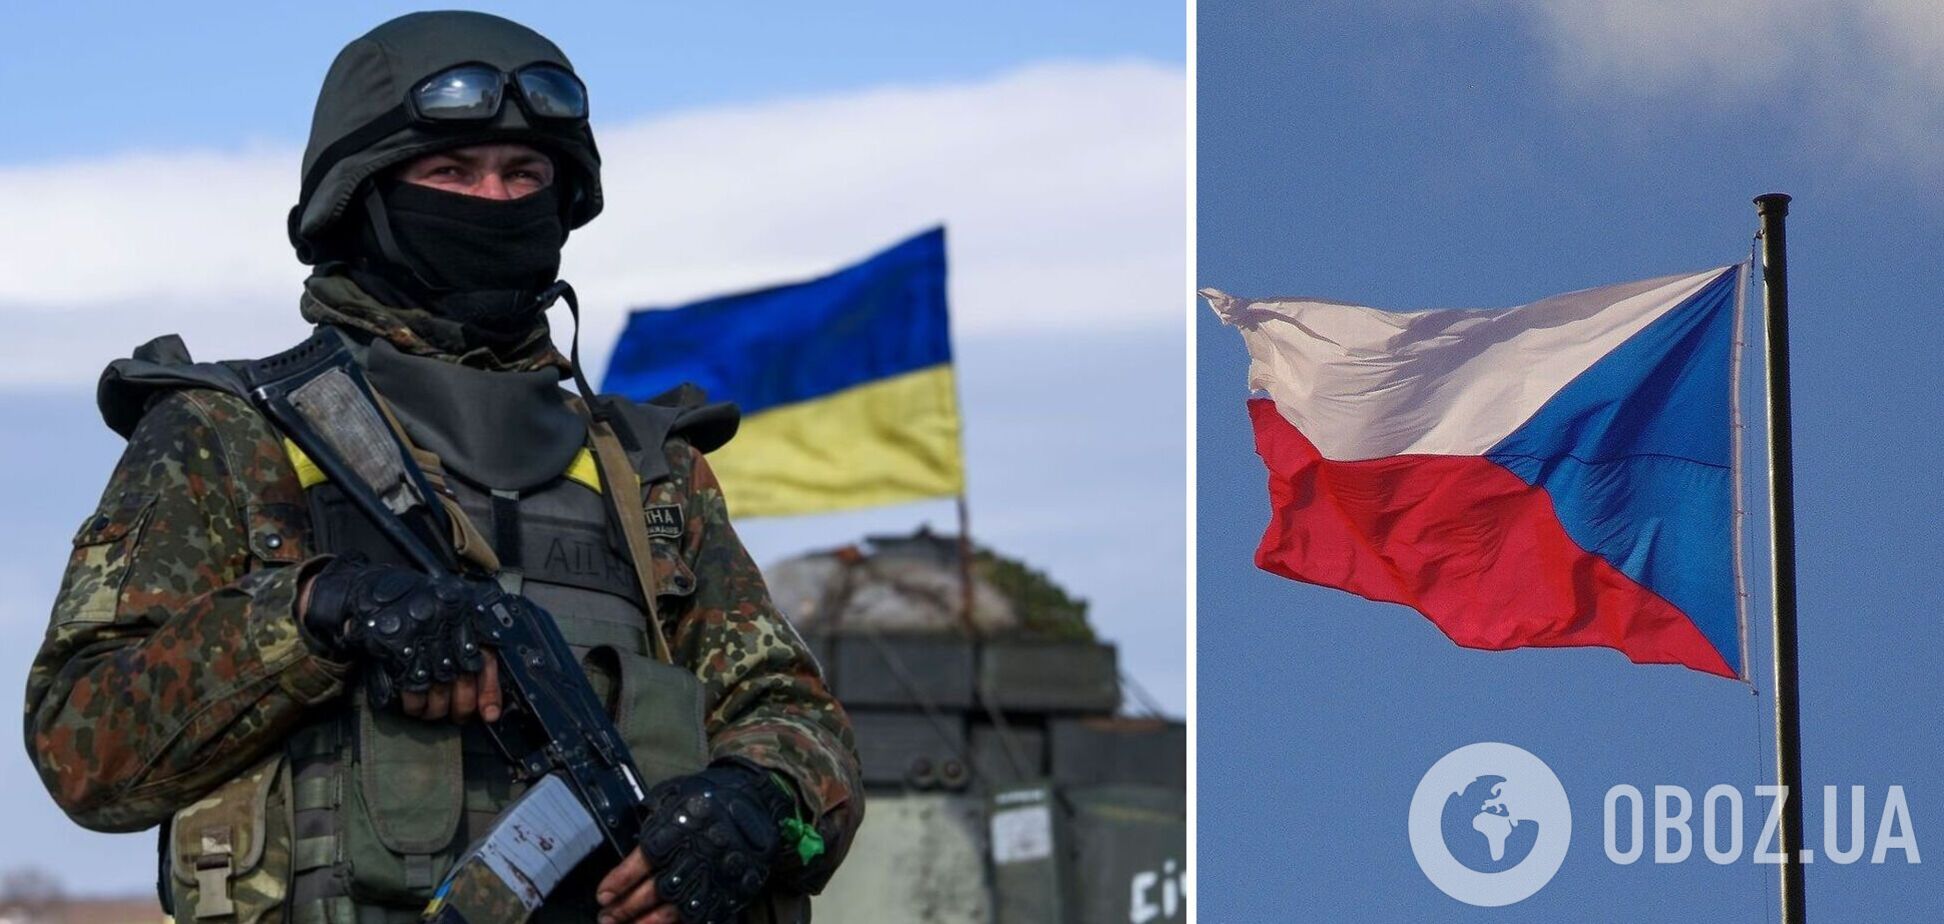 Чехія готує новий пакет військової допомоги Україні: голова Міноборони розкрила перші деталі